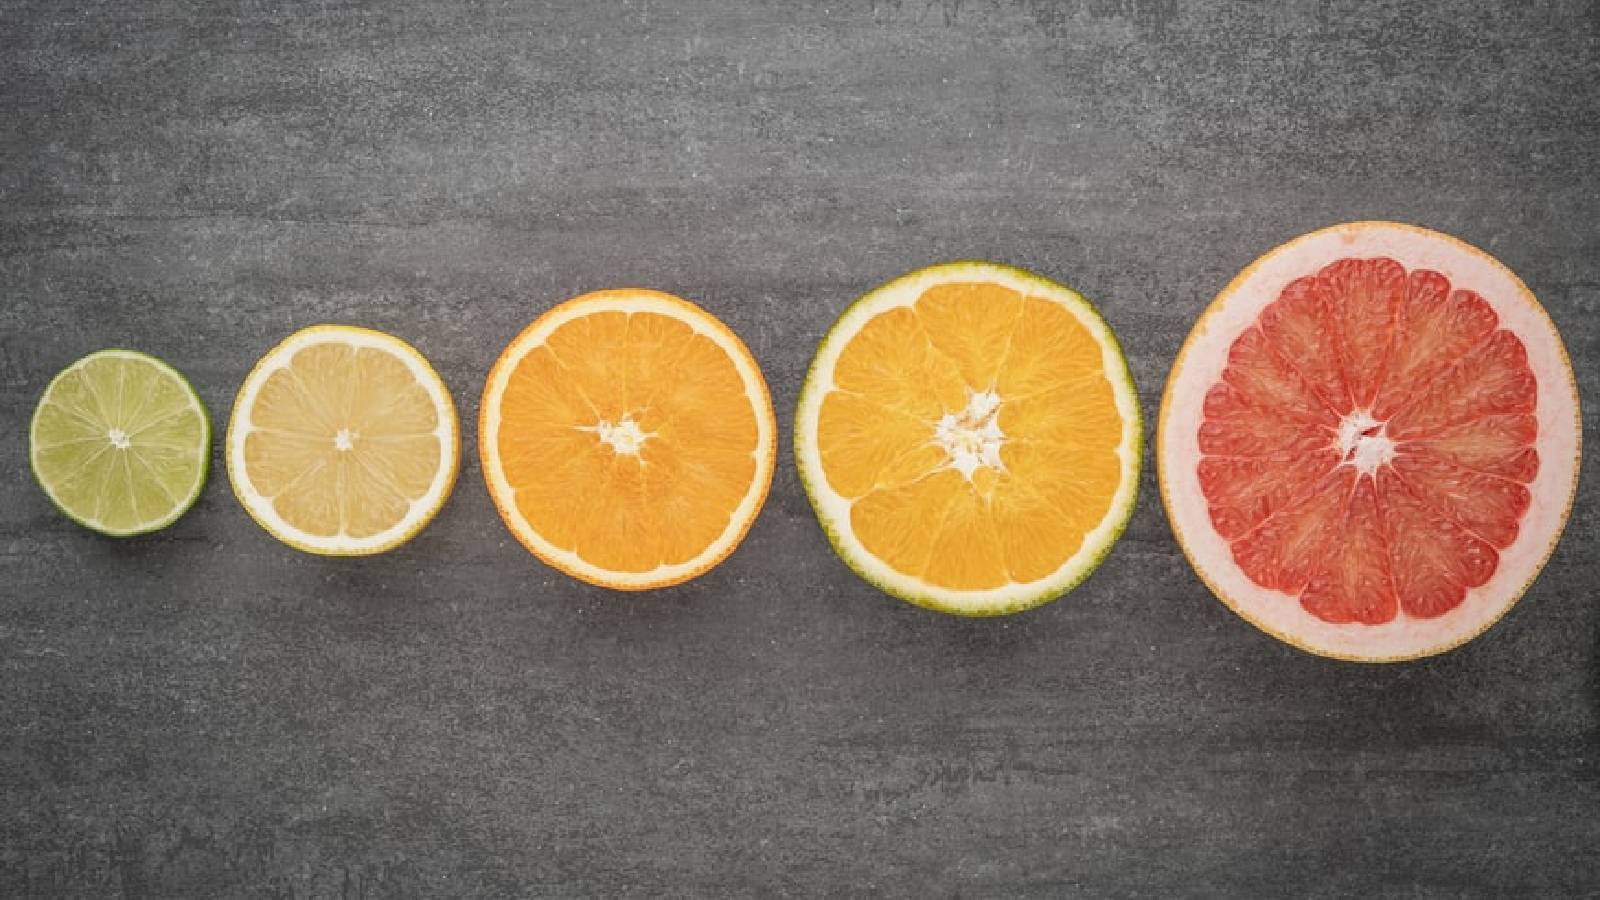 Исследователи ИИТ производят биотопливо, используя апельсиновые корки